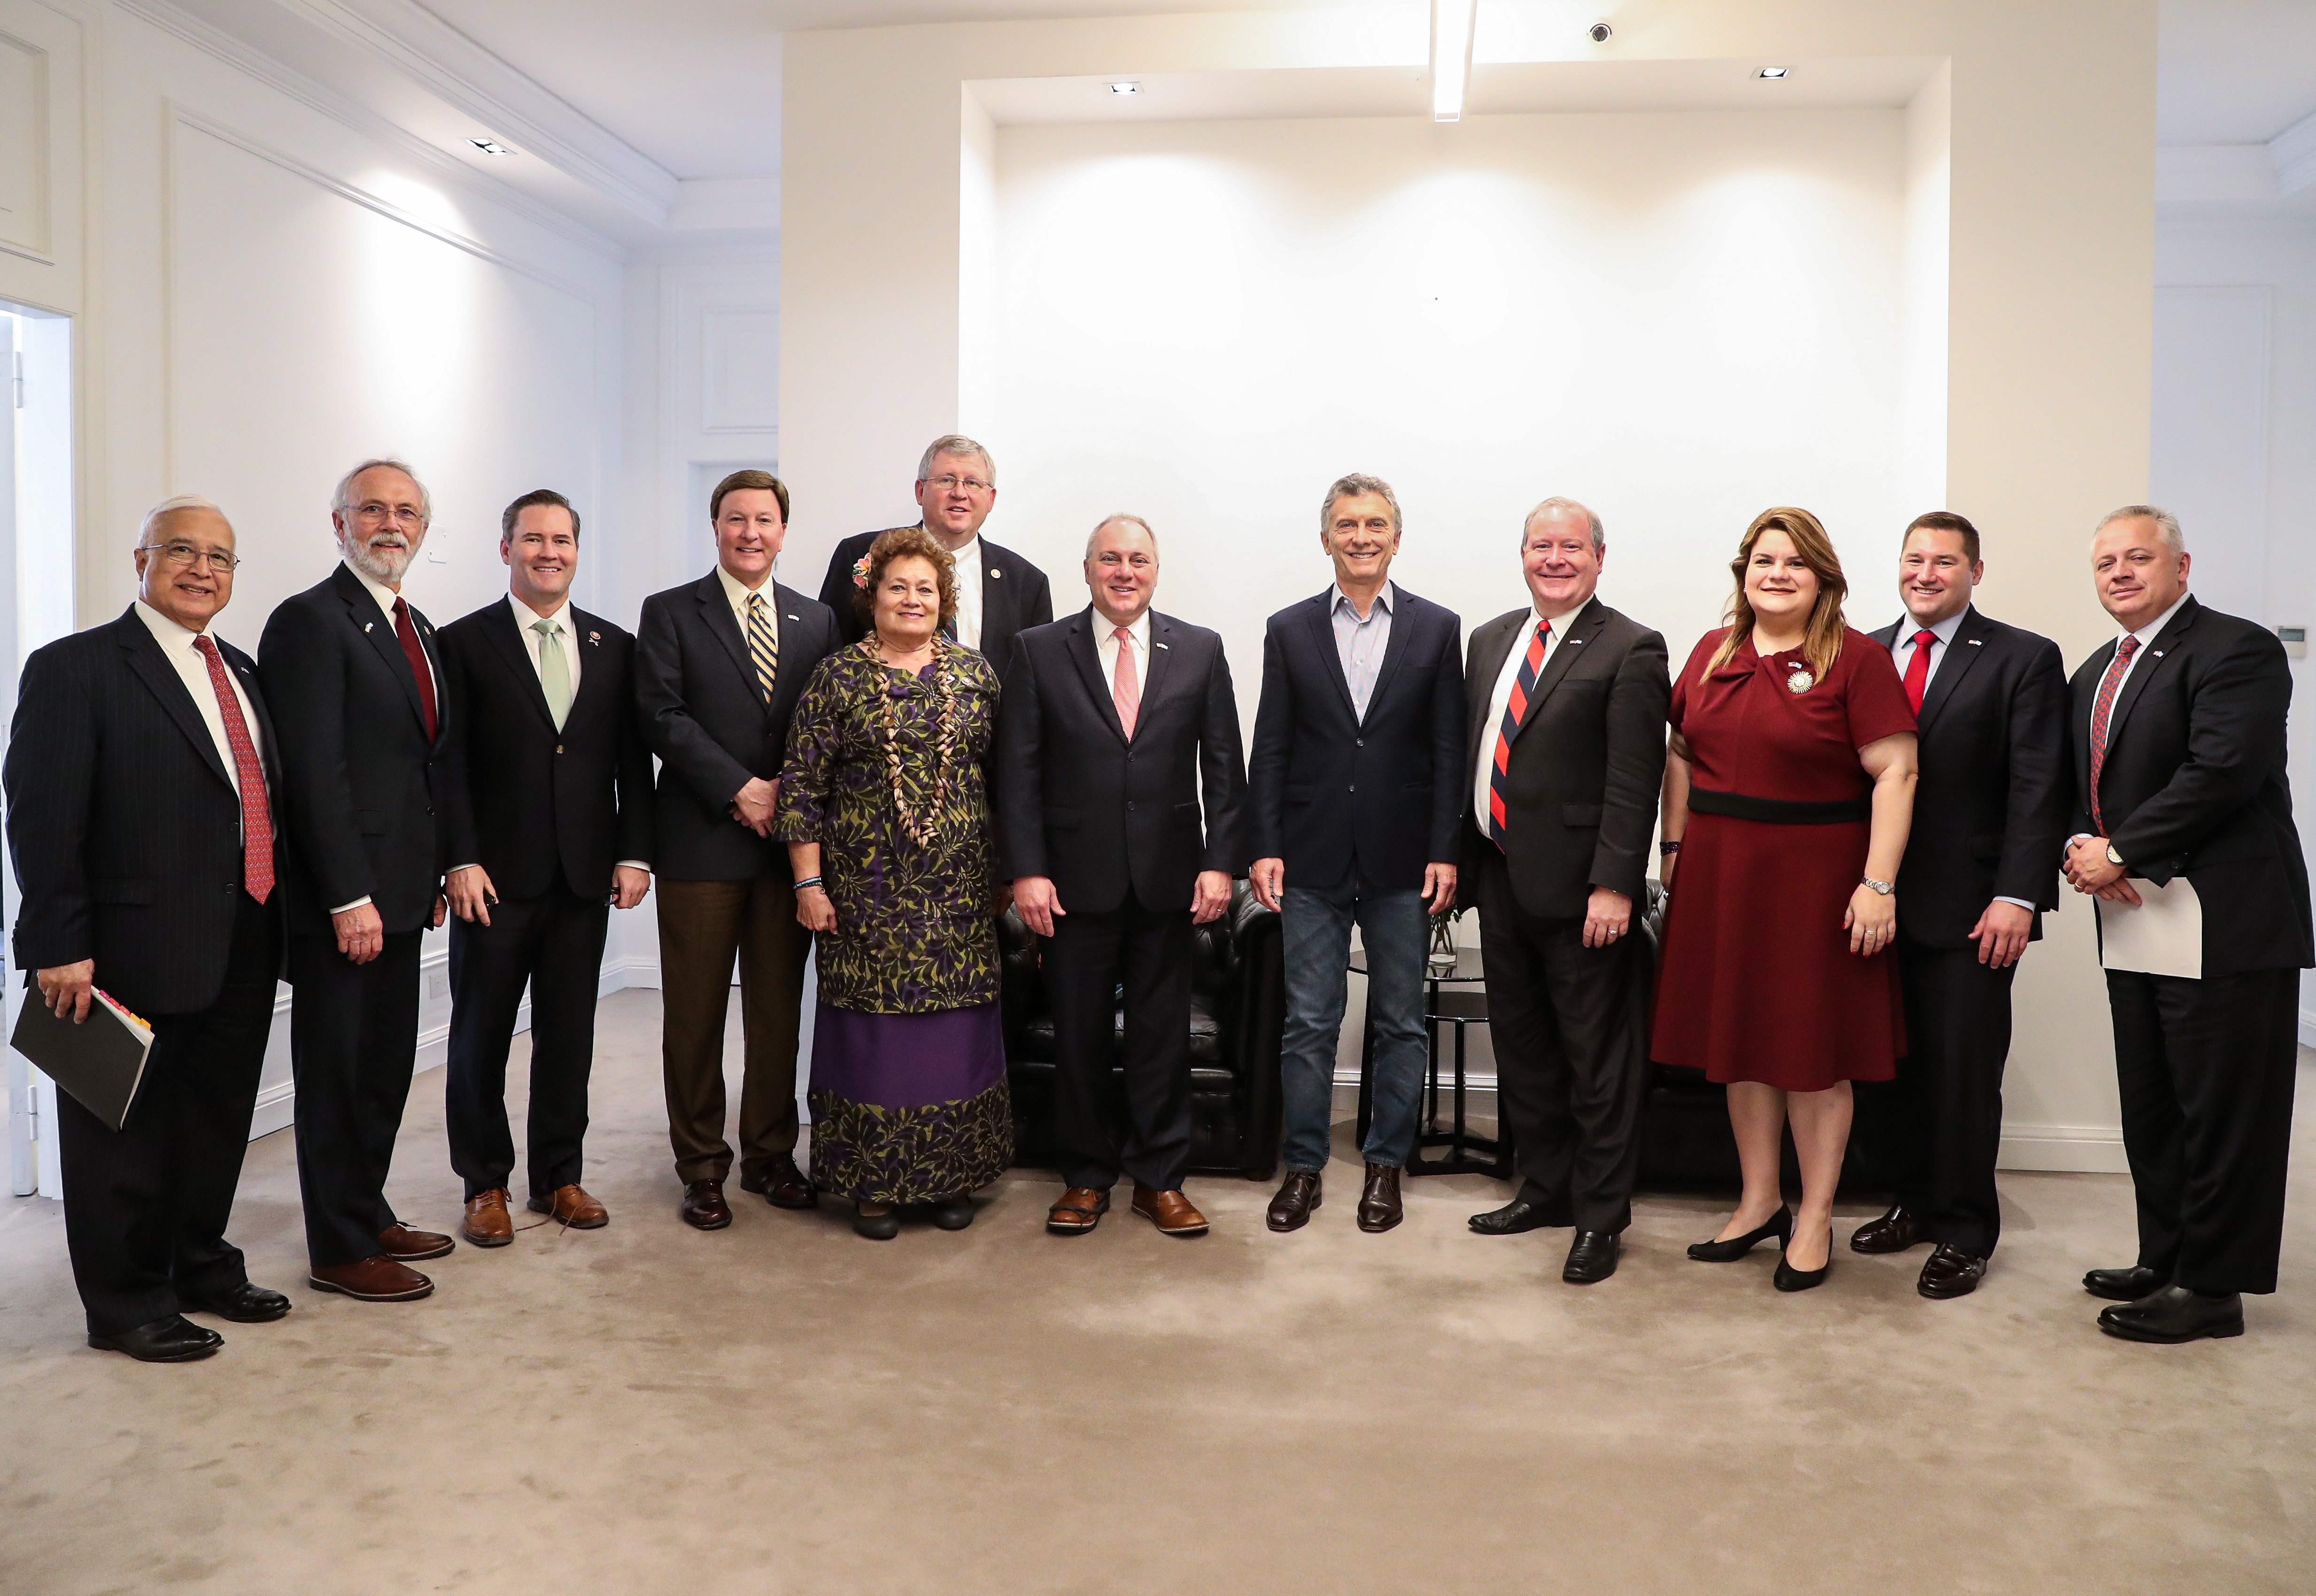 El presidente Macri recibió a una delegación de congresistas de los Estados Unidos